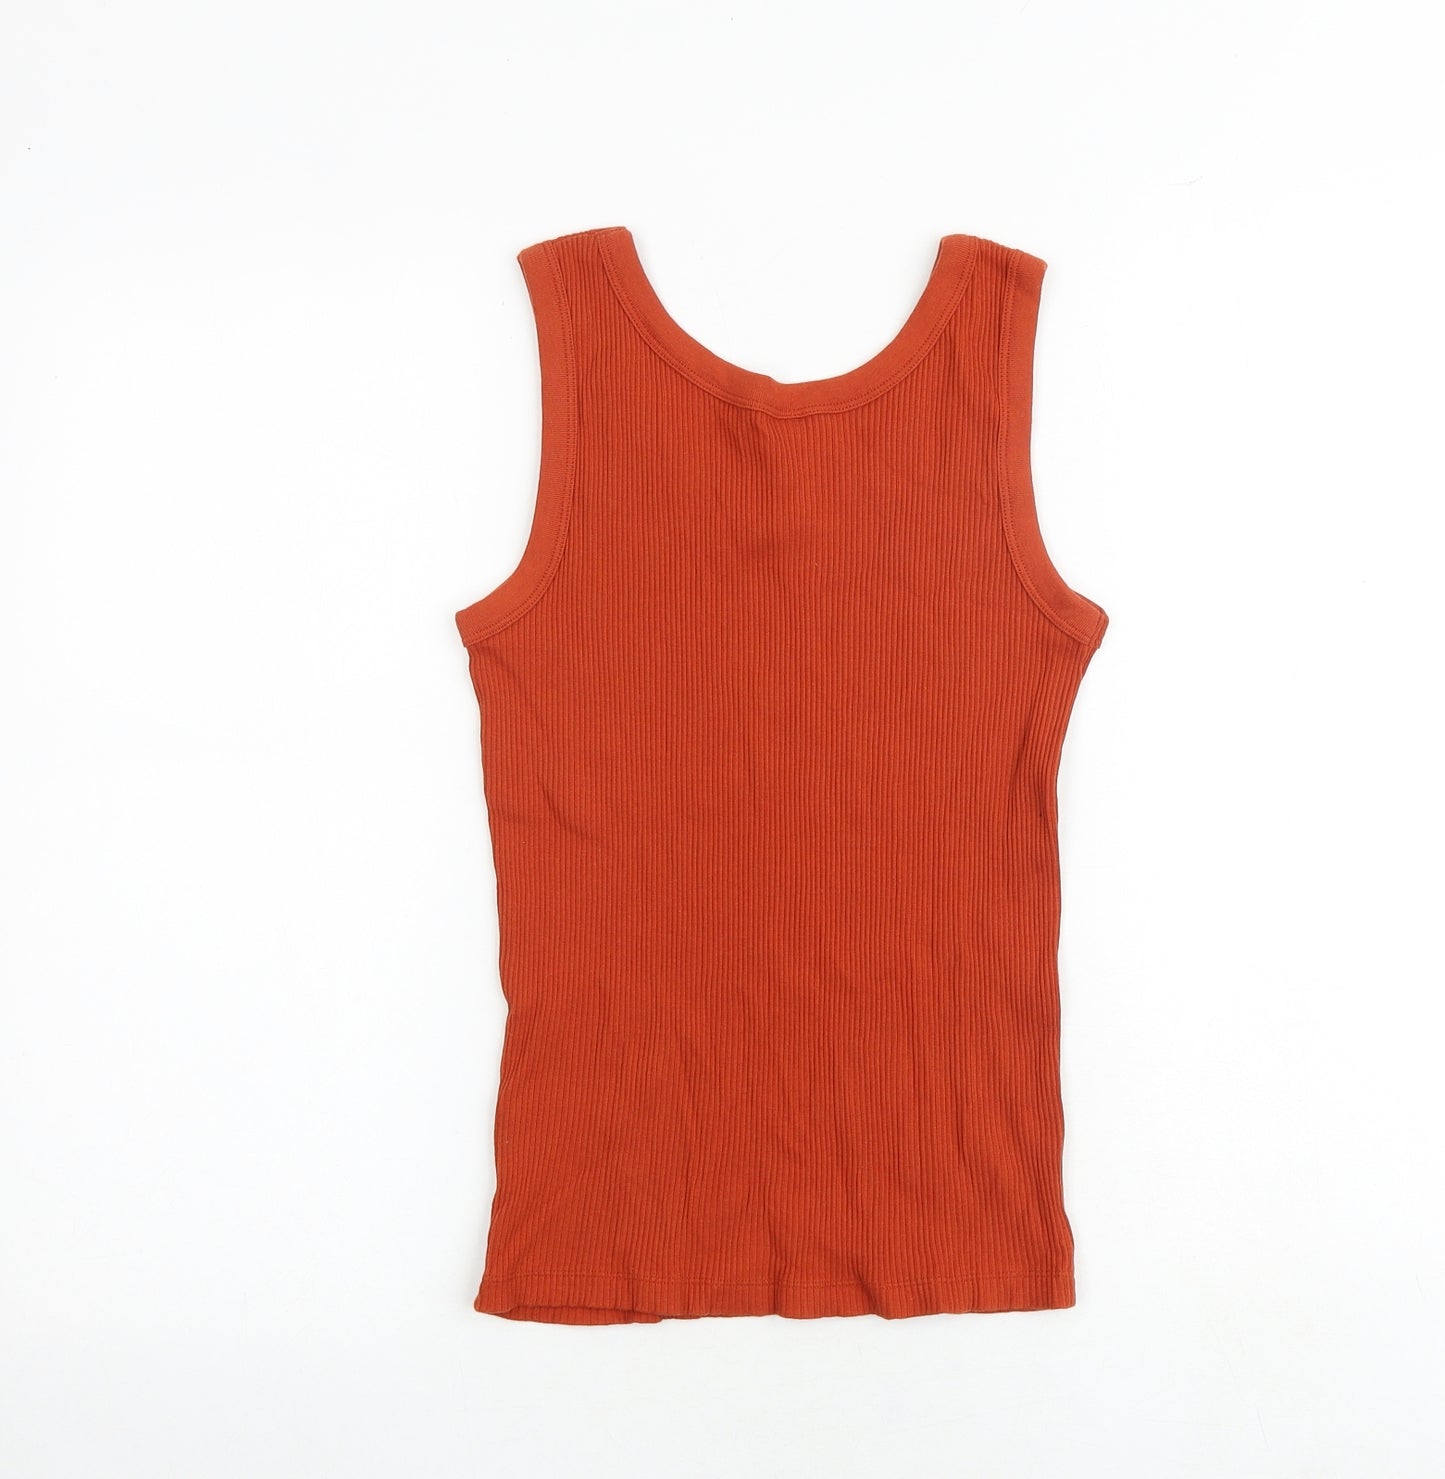 Uniqlo Womens Orange Cotton Basic Tank Size XS Scoop Neck - Ribbed